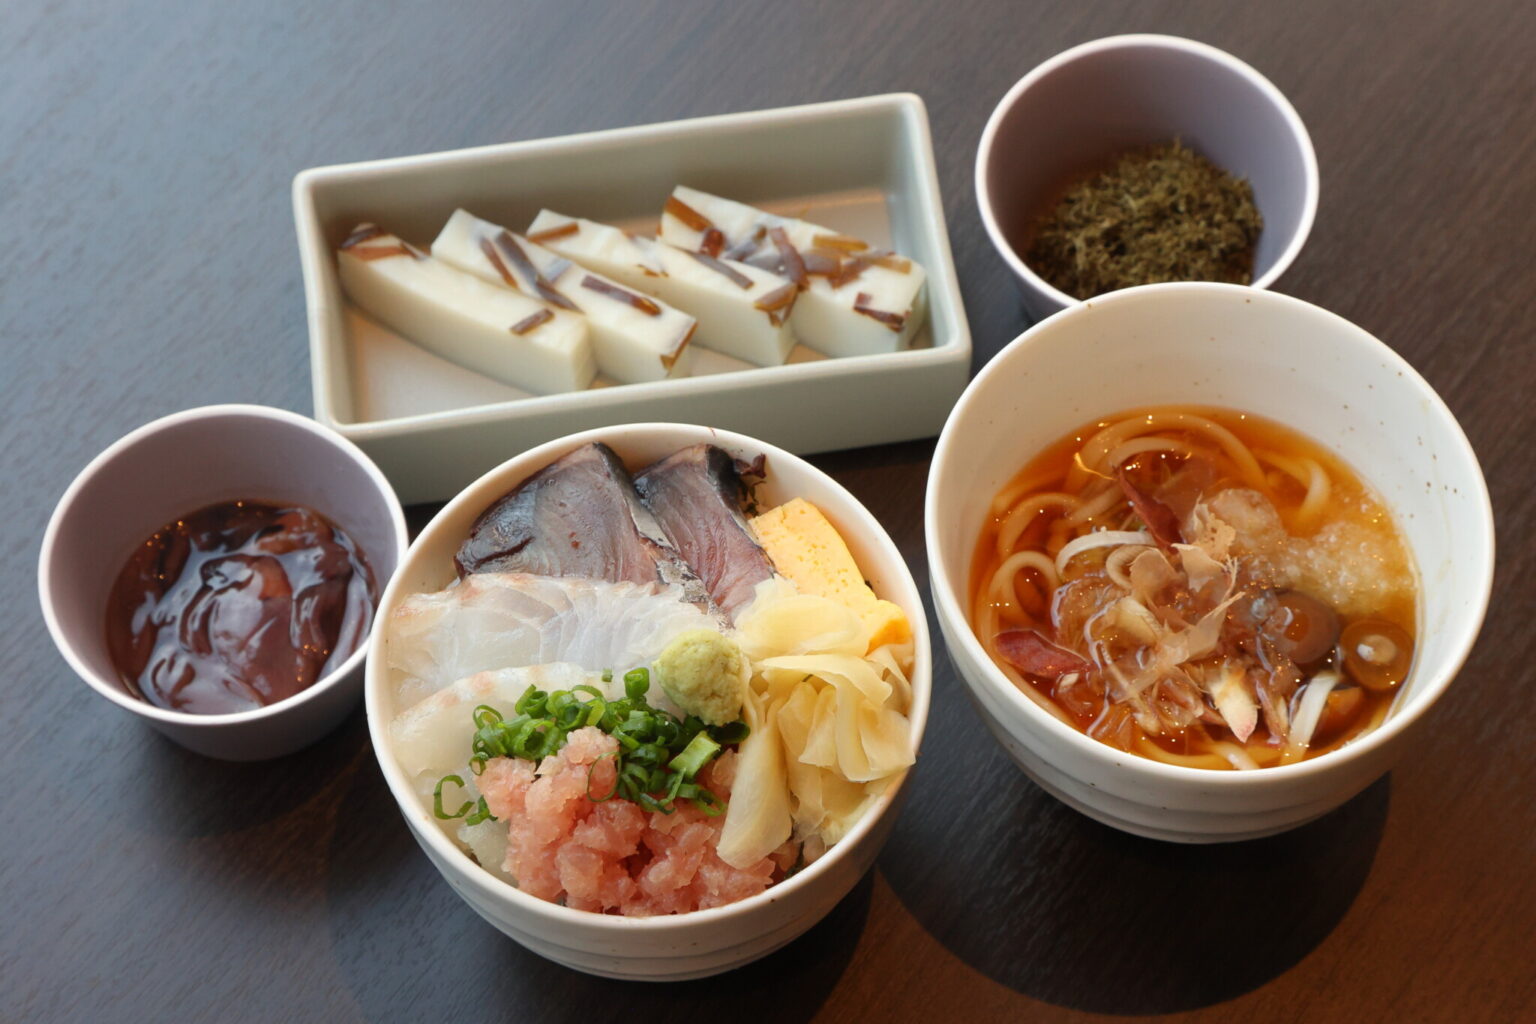 「エンドレスでおかわりできそう」と座二郎さん太鼓判の海鮮丼をはじめ、富山の味覚が楽しめるラインナップ。